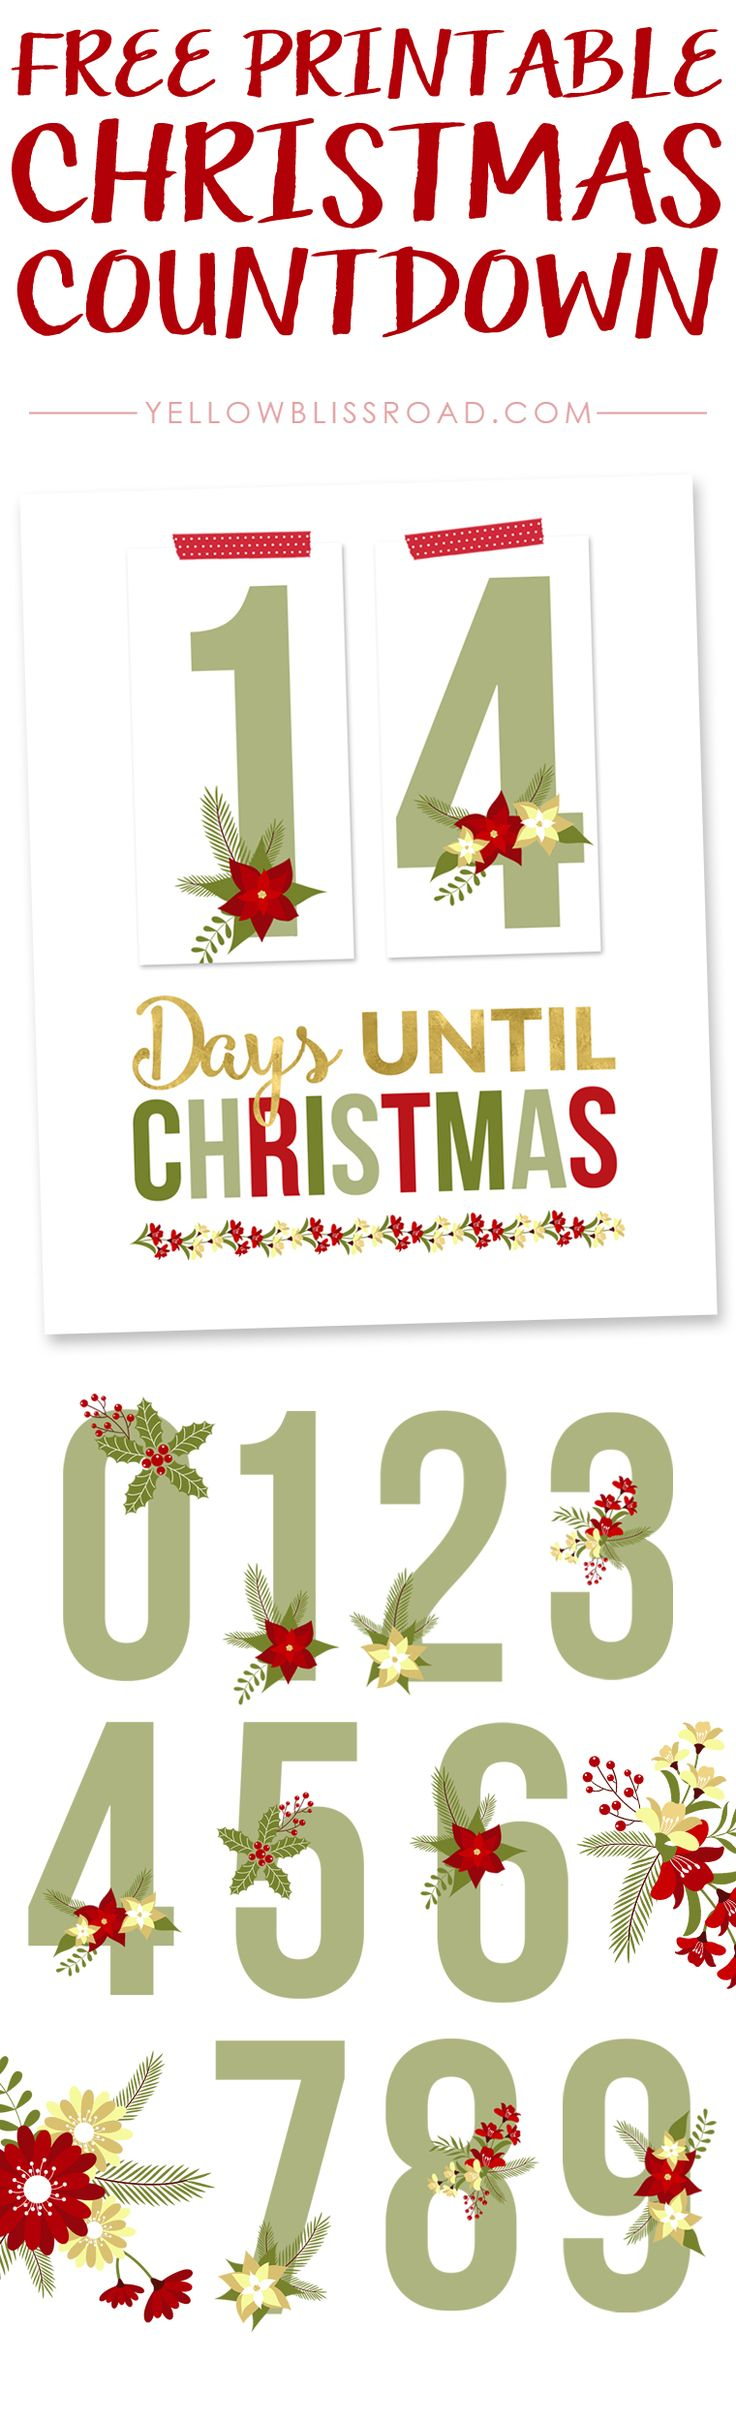 Free Printable Christmas Countdown | Bake Craft Sew Decorate - Free Printable Christmas Photo Collage